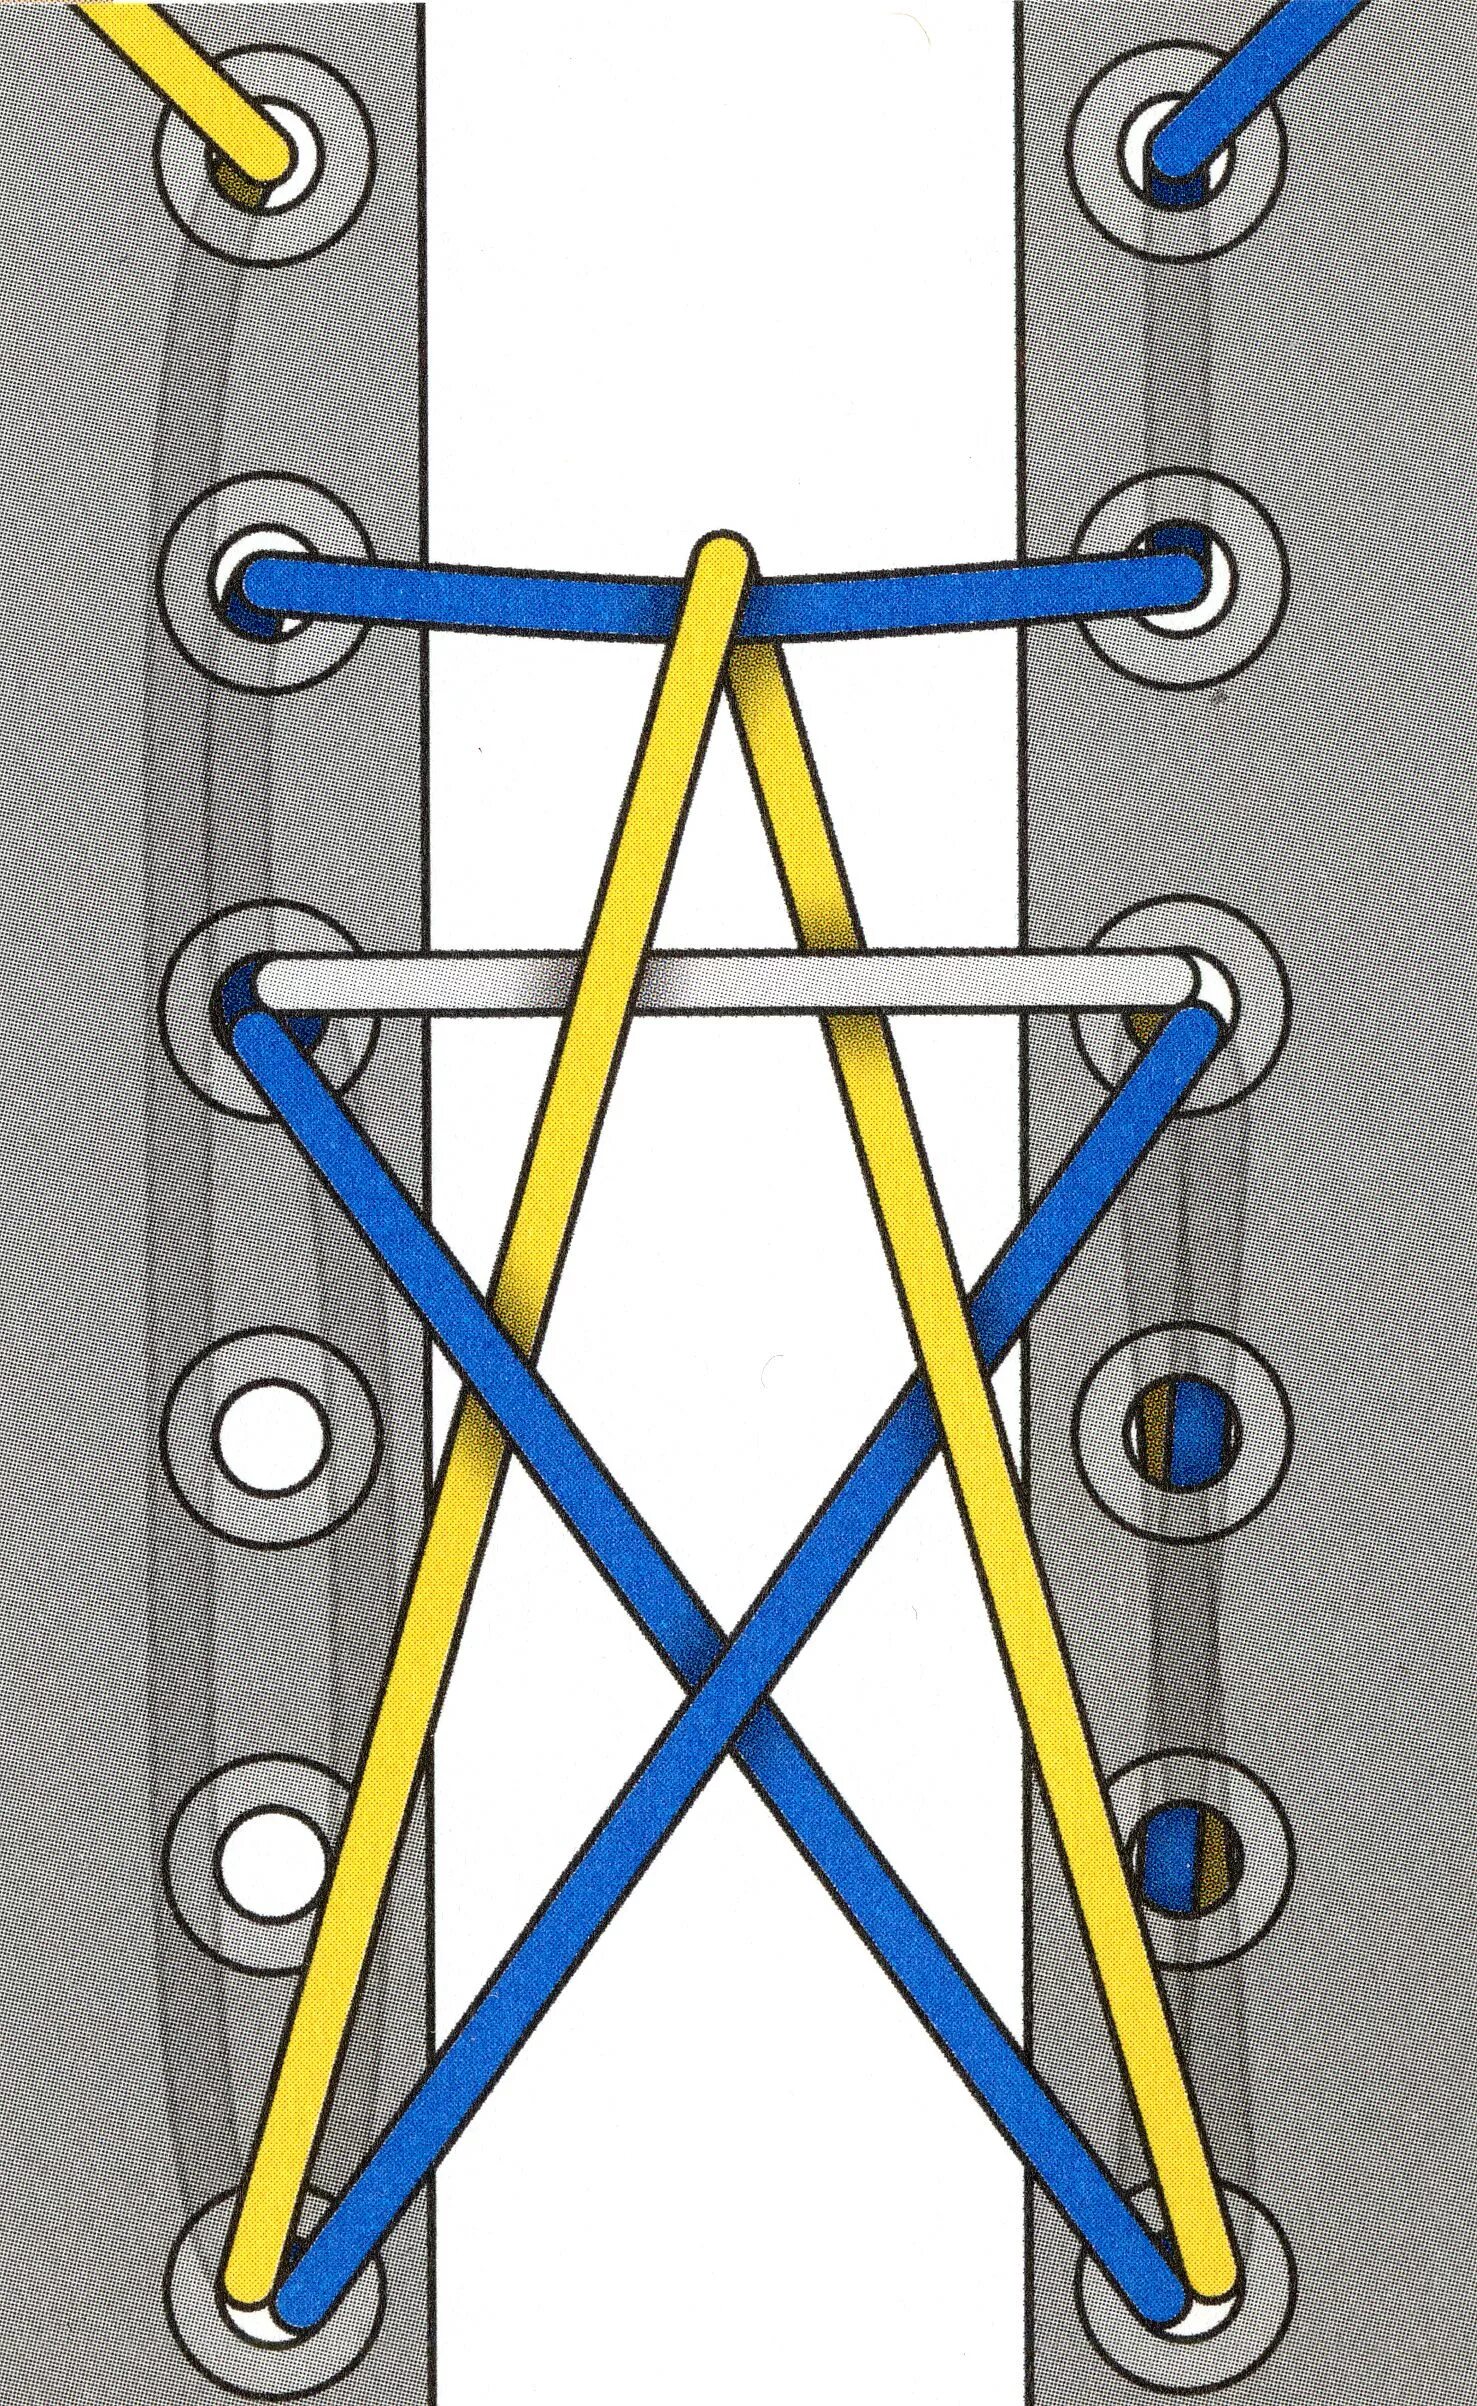 Короткая шнуровка. Схема завязывания шнурков звезда. Как завязать шнурки на 5 дырок. Красиво зашнуровать шнурки на 5 дырок. Способы завязывания шнурков на 5 дырок.